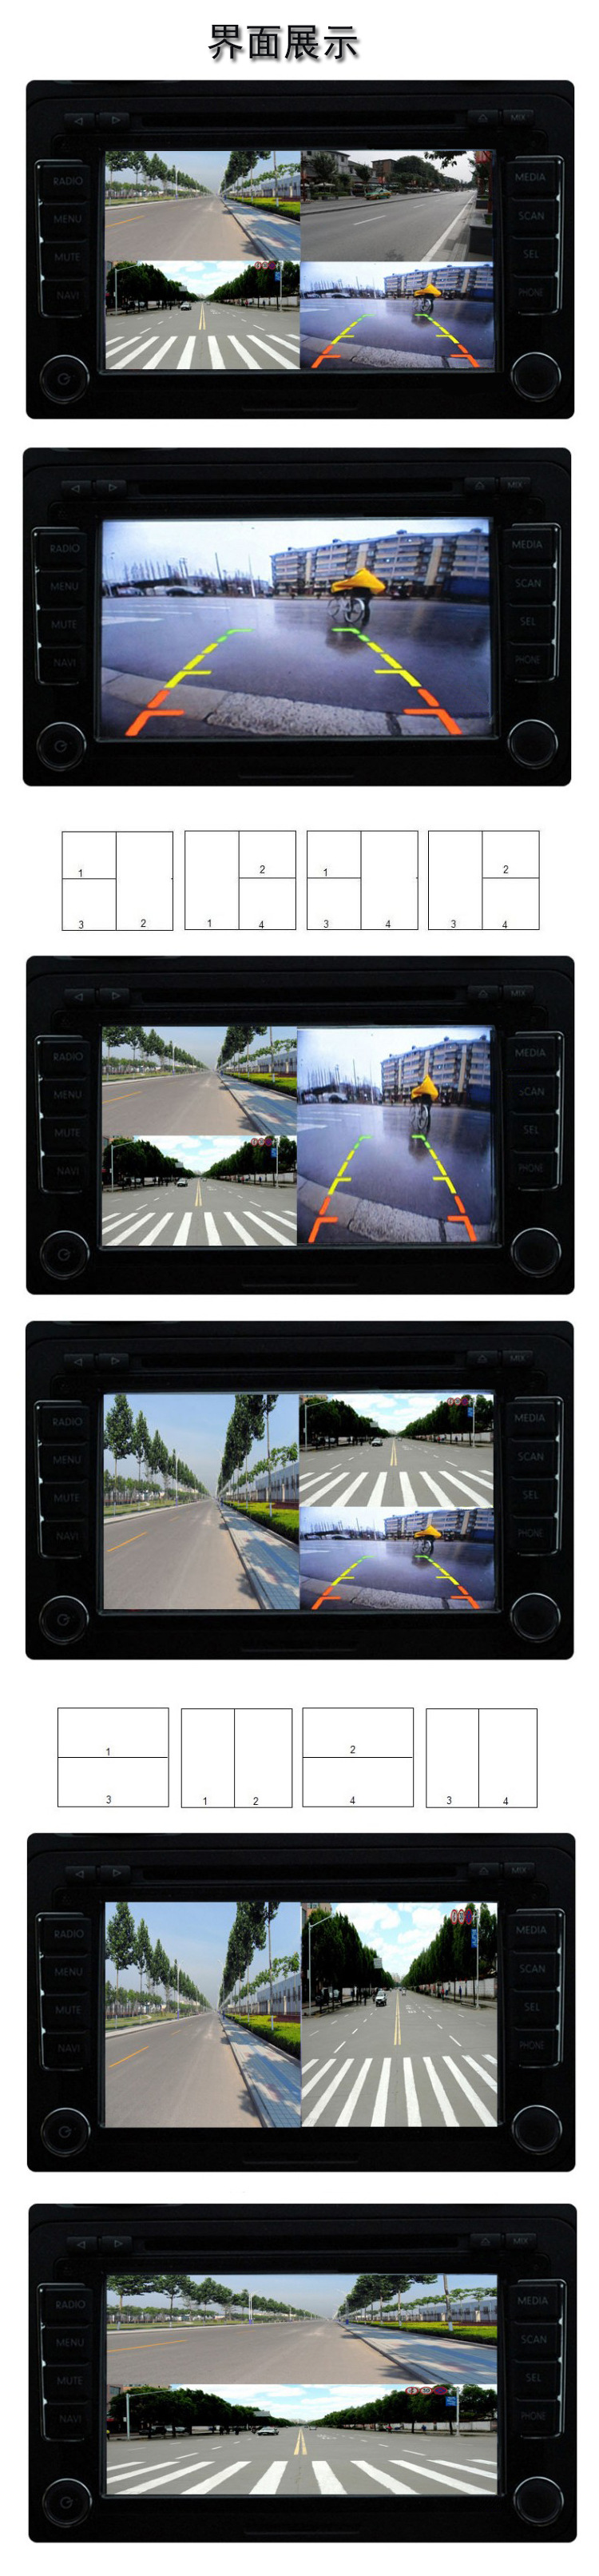 四路车载视频分割器 4画面2画面调节 多画面同显 倒车/侧视/前视示例图5